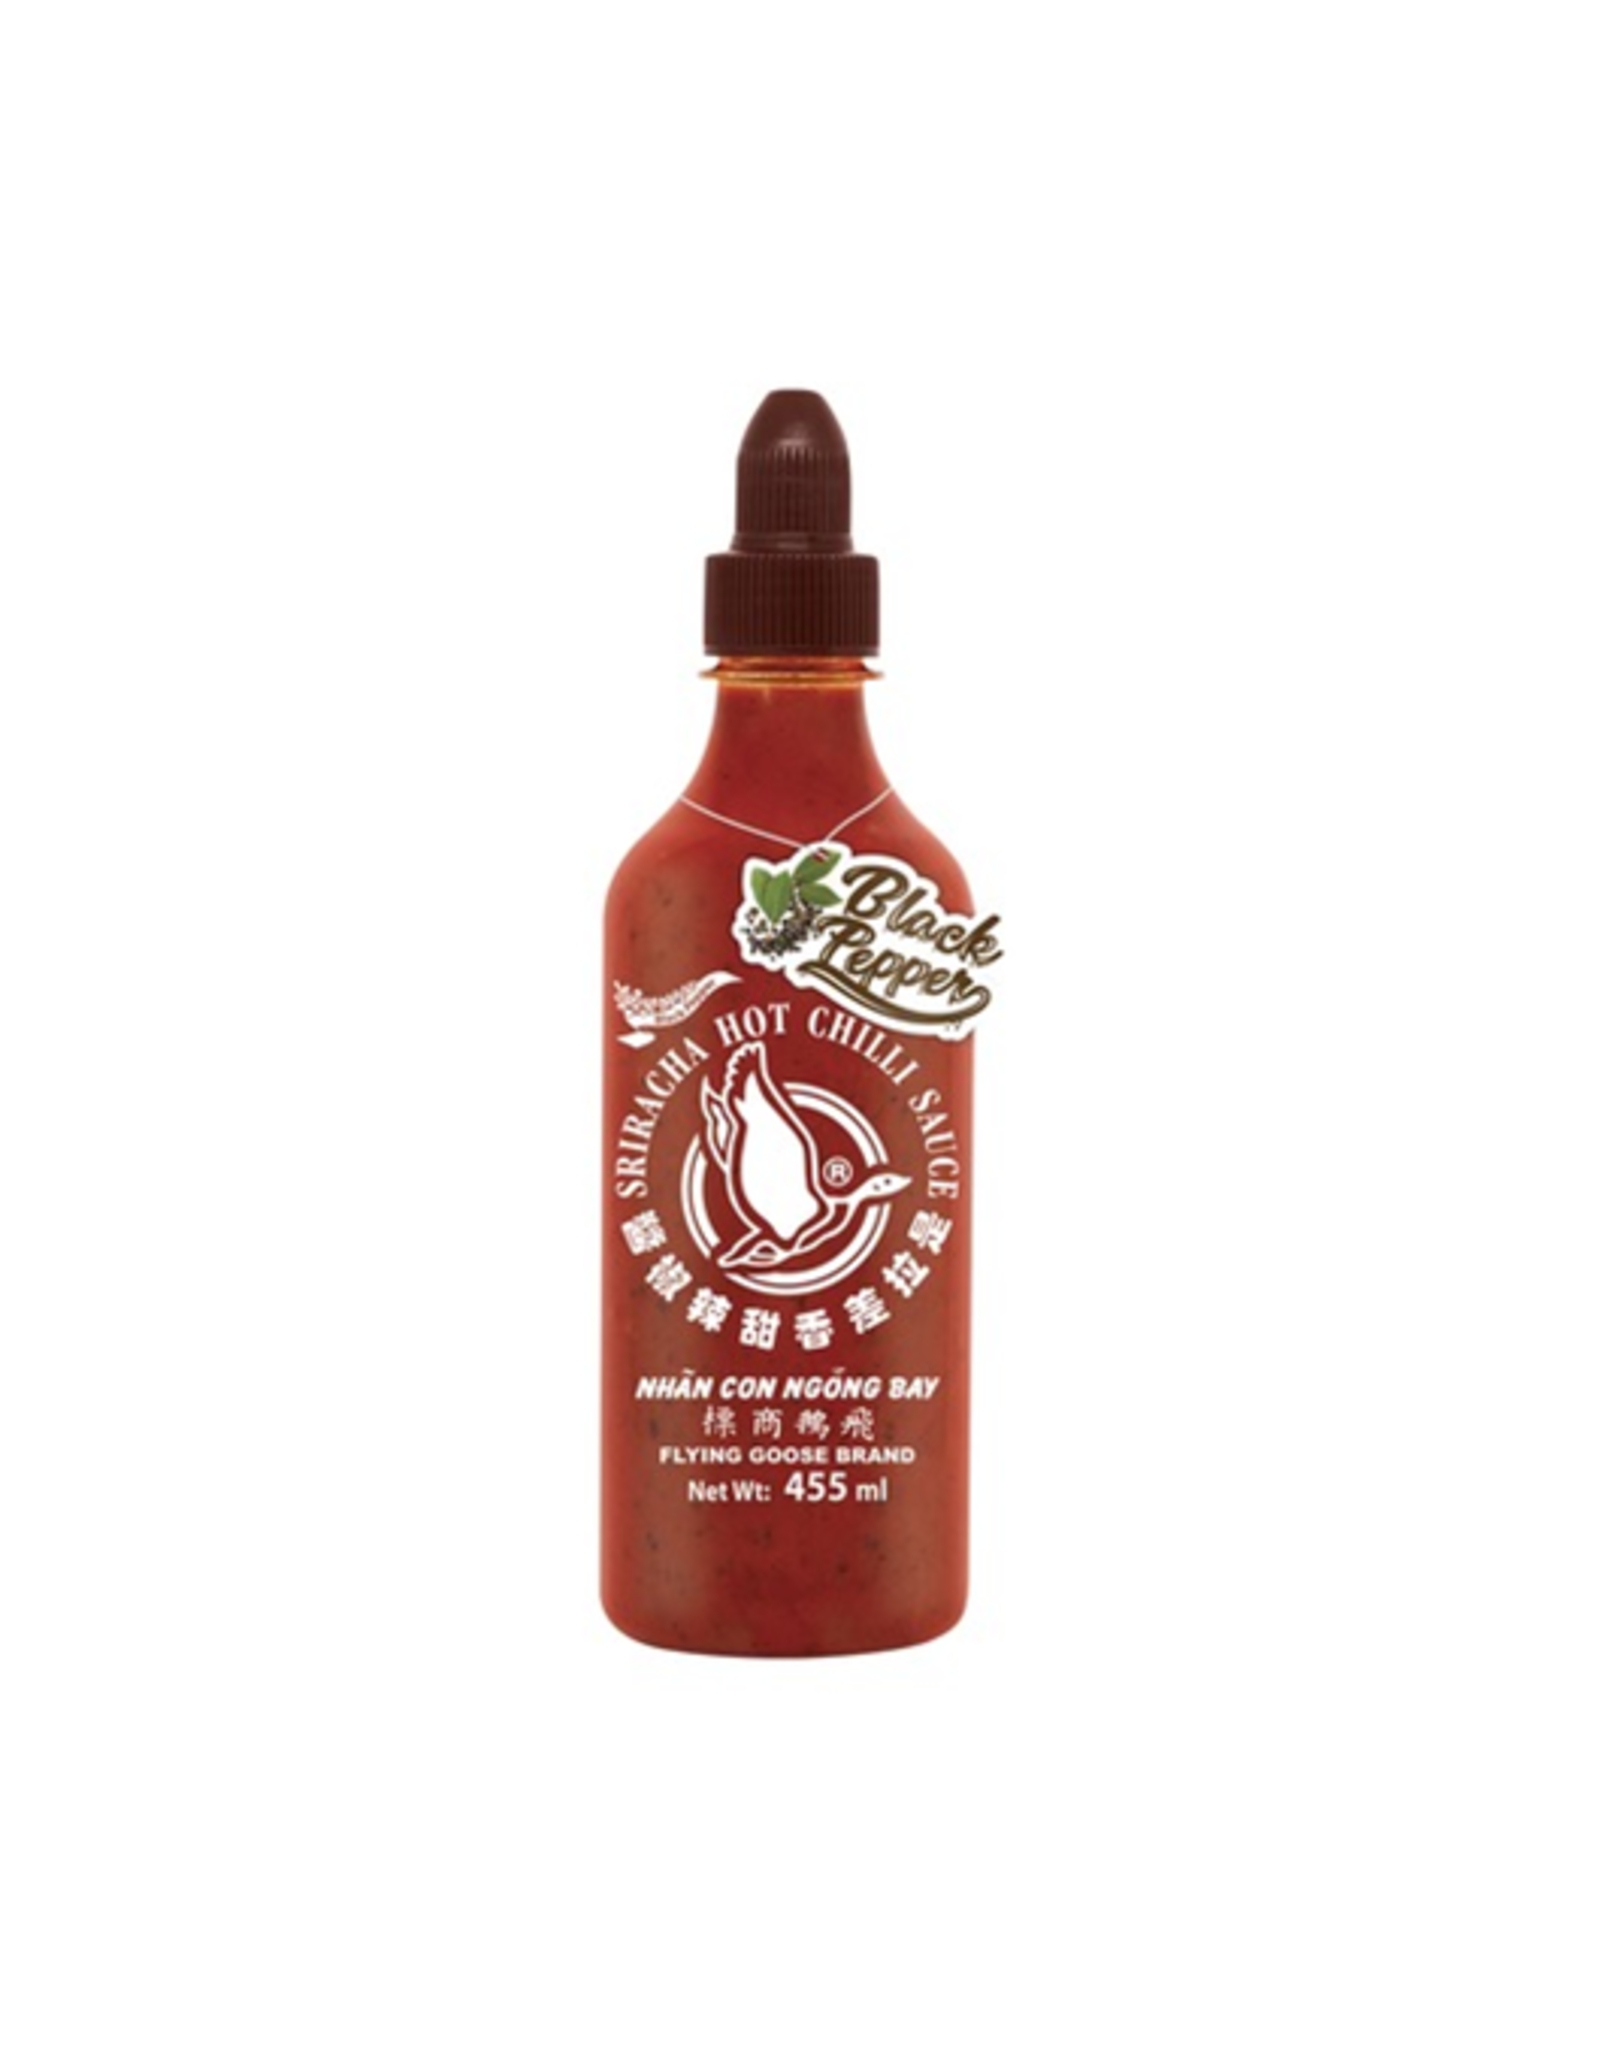 Flying Goose Brand Sriracha Hot Chilli Sauce Black Pepper